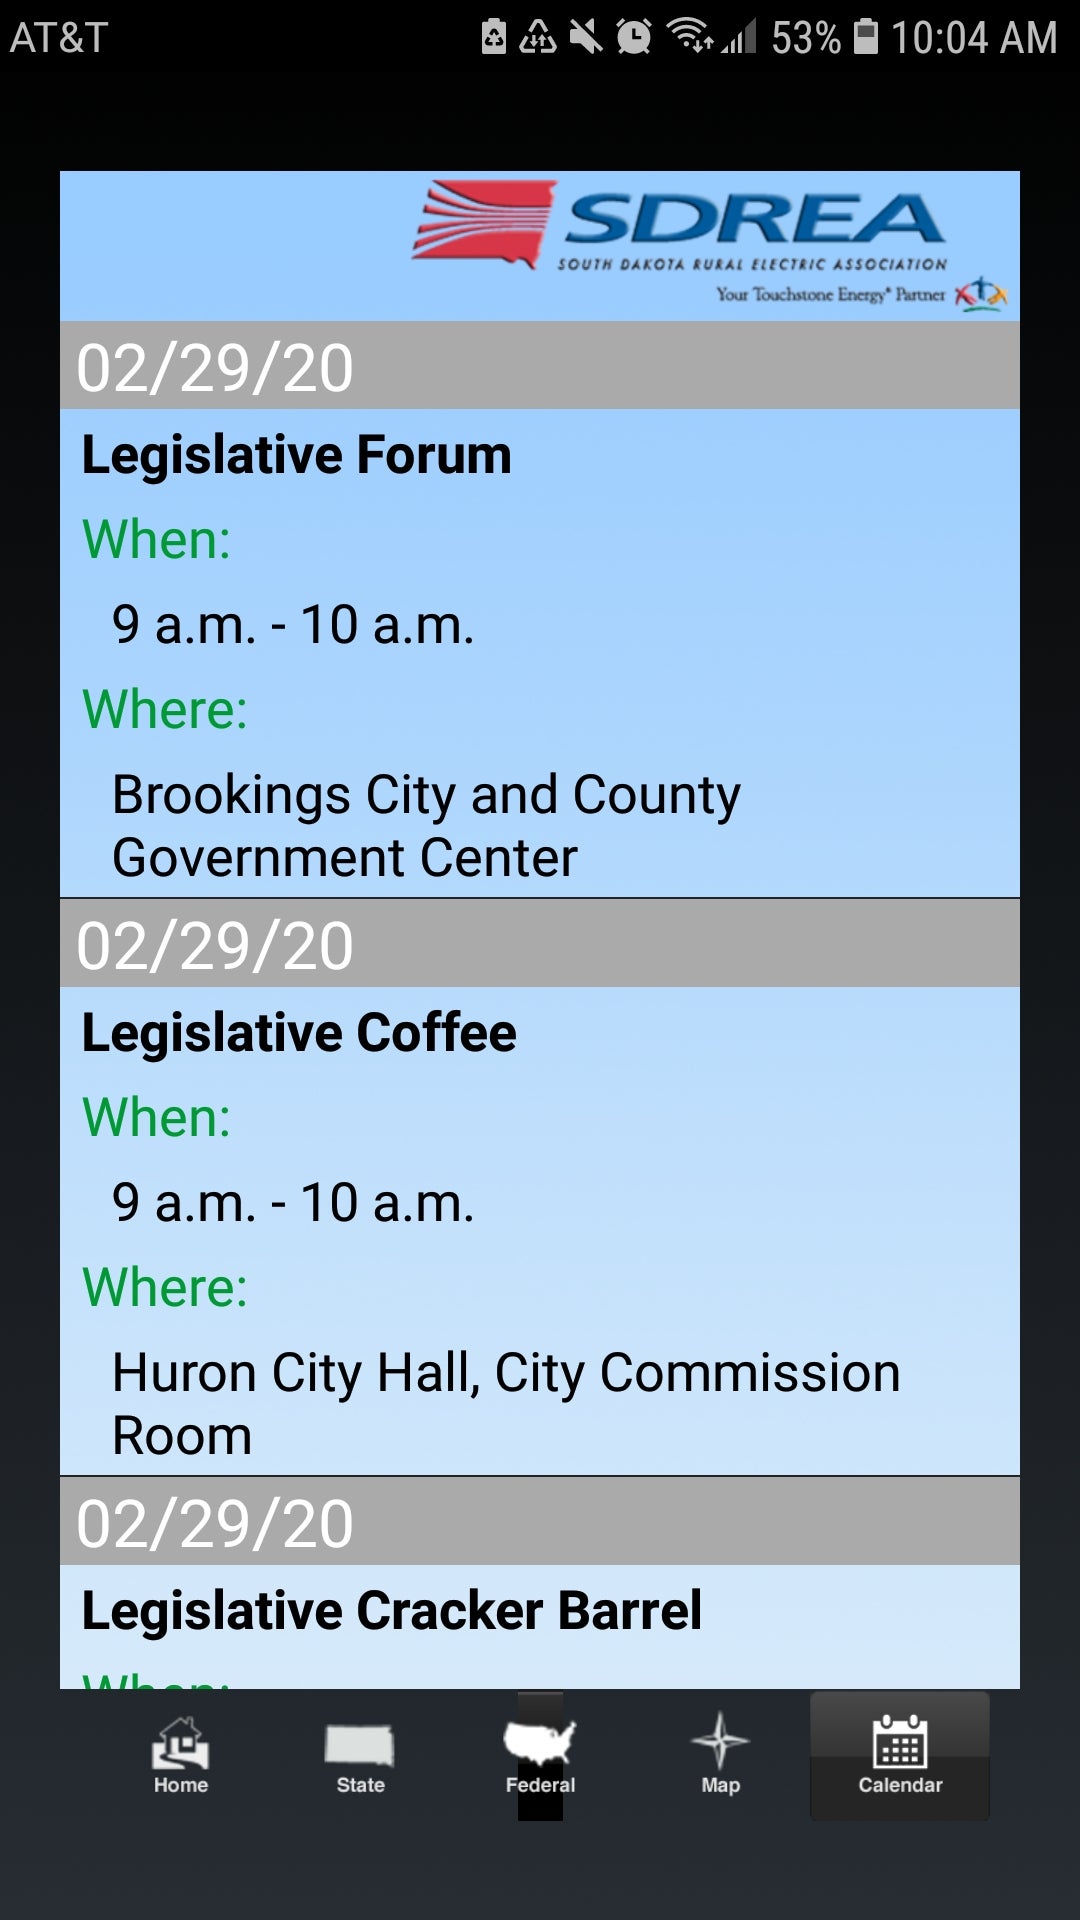 Picture of Legislative Mobile App calendar feature